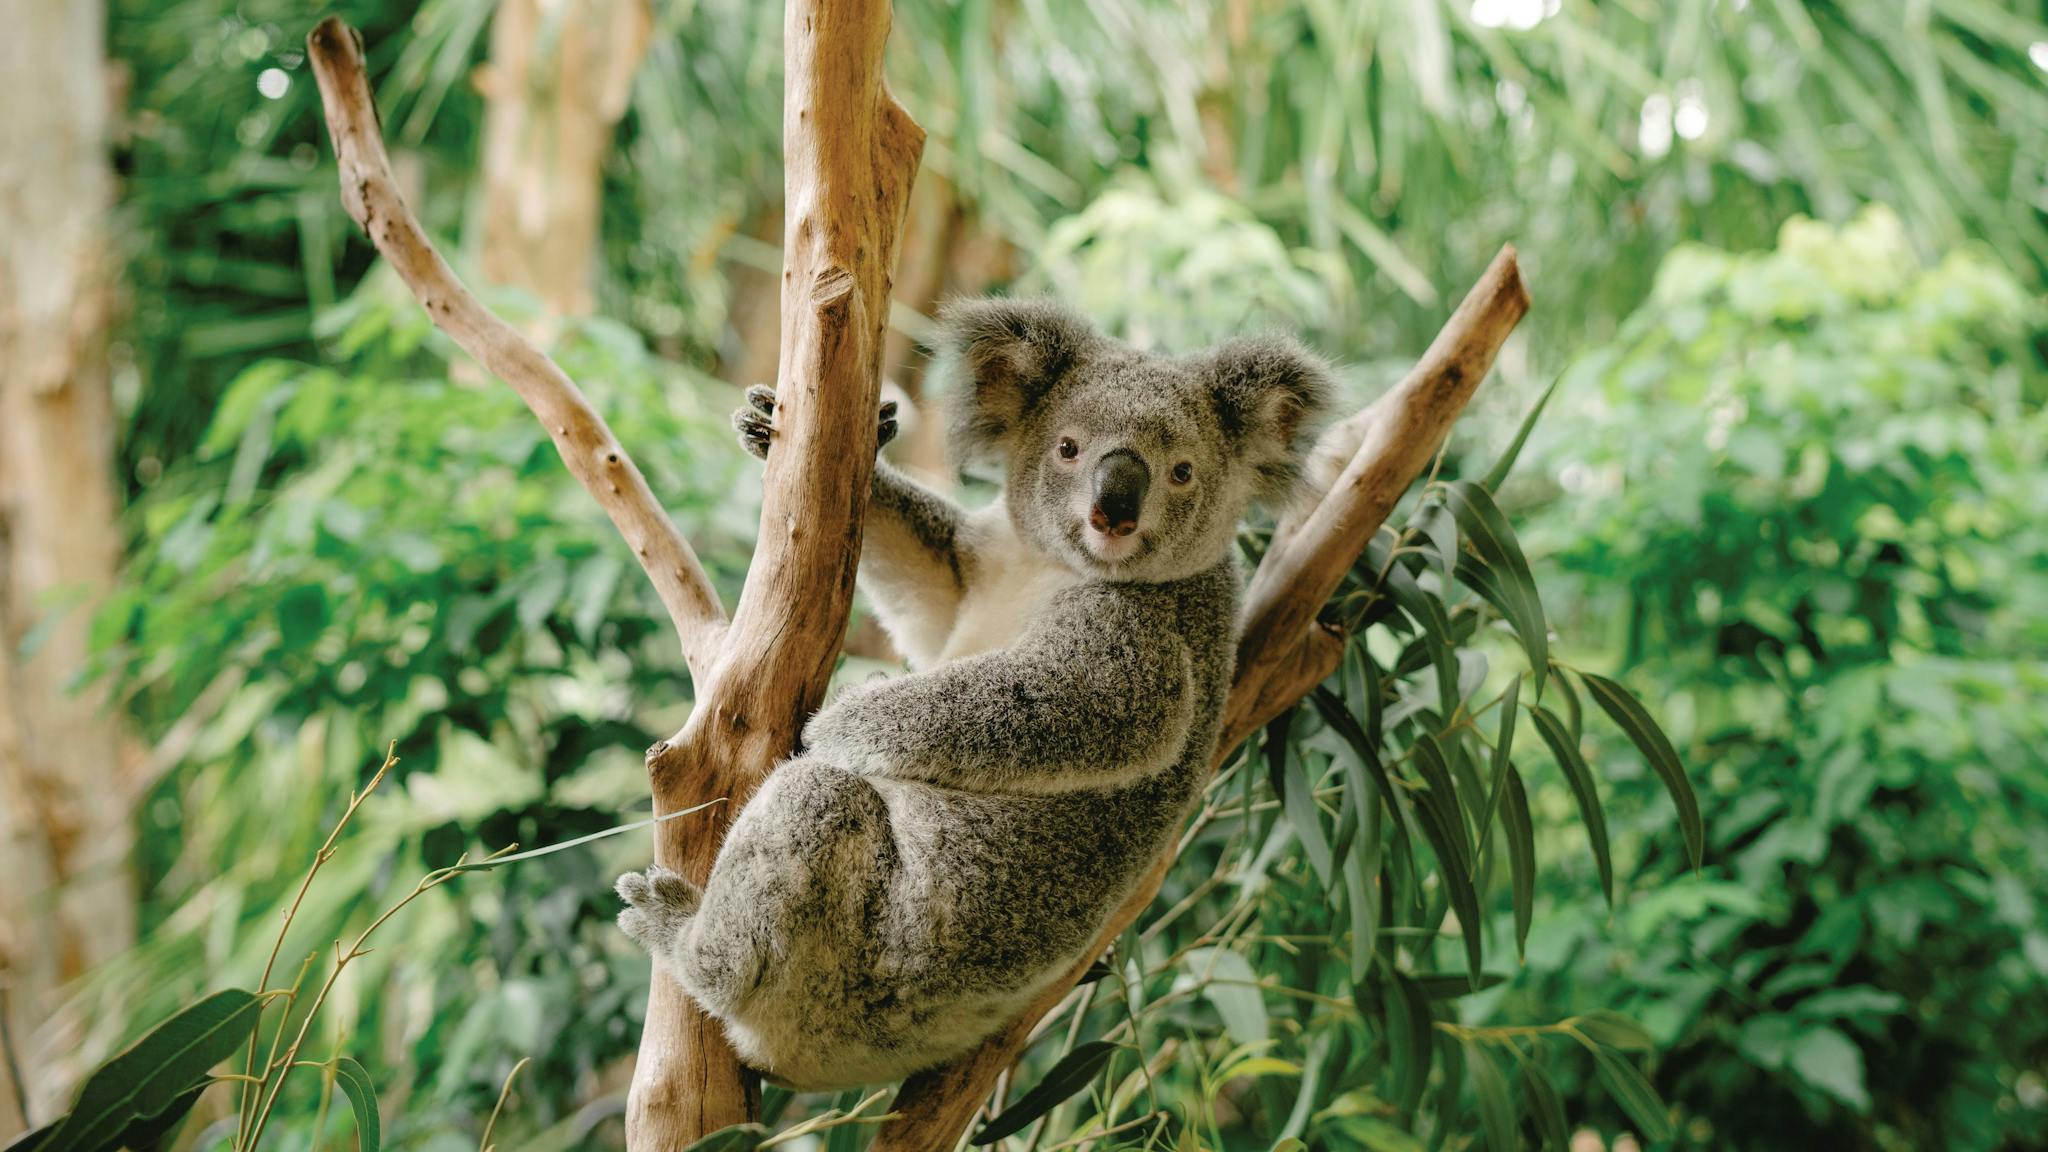 Close up of koala in tree.